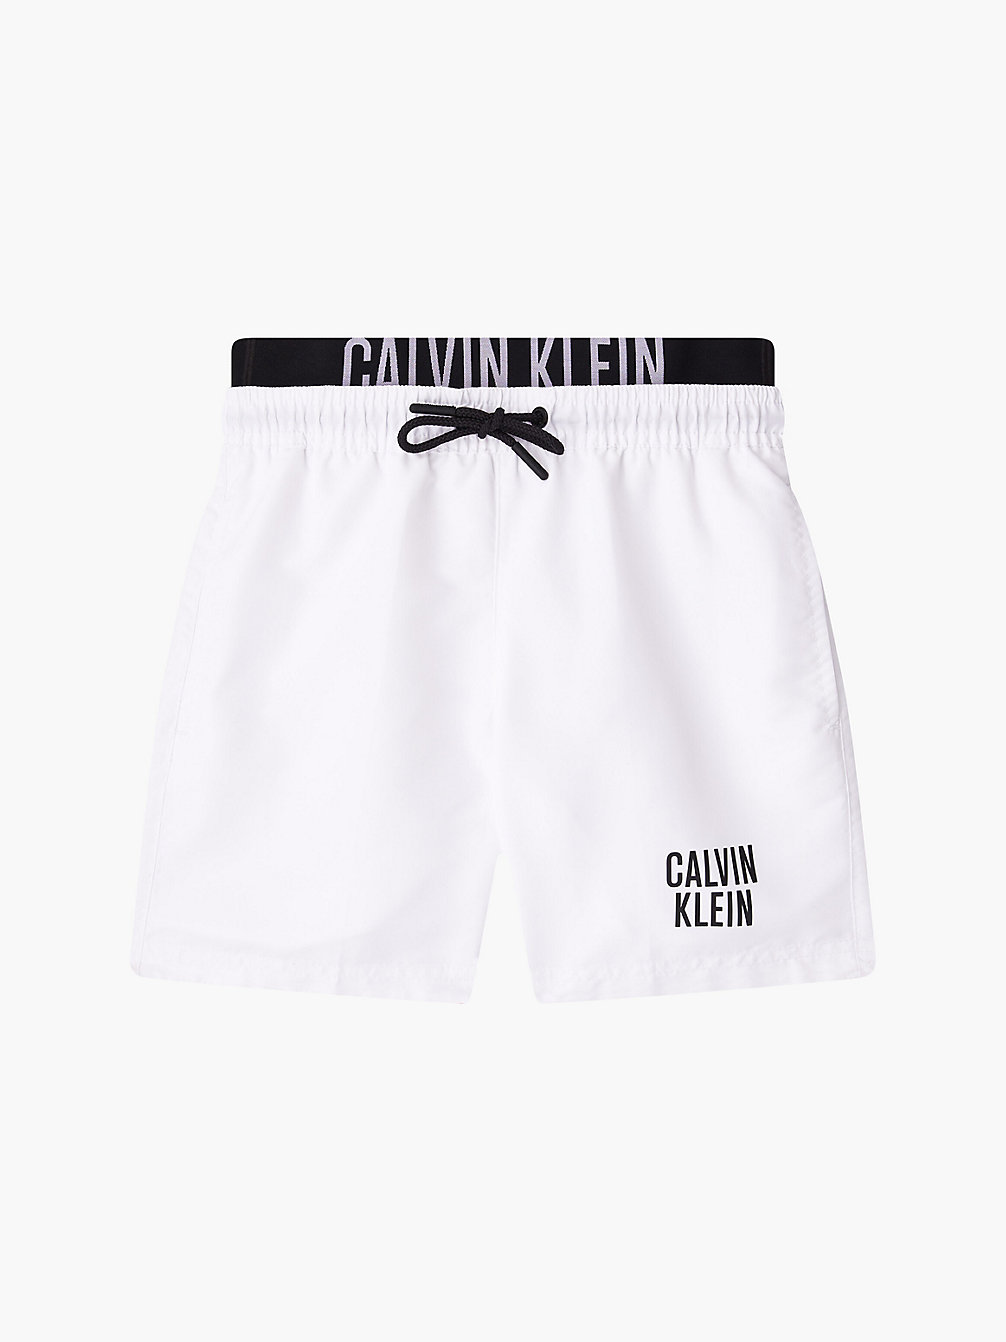 PVH CLASSIC WHITE > Jongenszwemshorts - Intense Power > undefined jongens - Calvin Klein